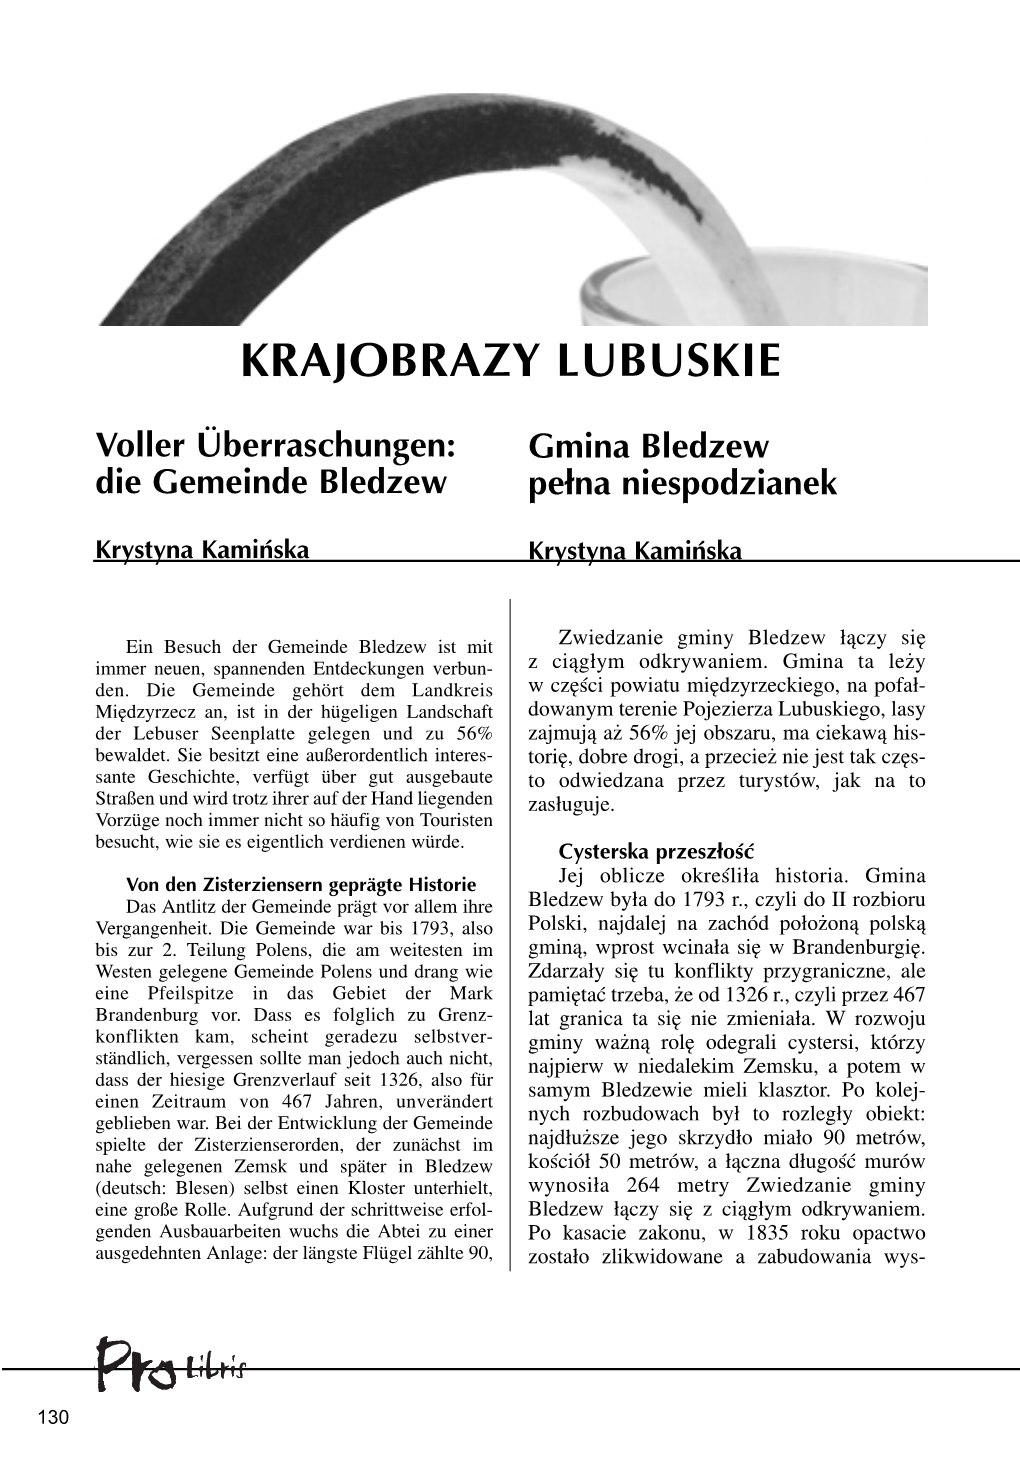 KRAJOBRAZY LUBUSKIE Str. 130 Krystyna Kamińska, Gmina